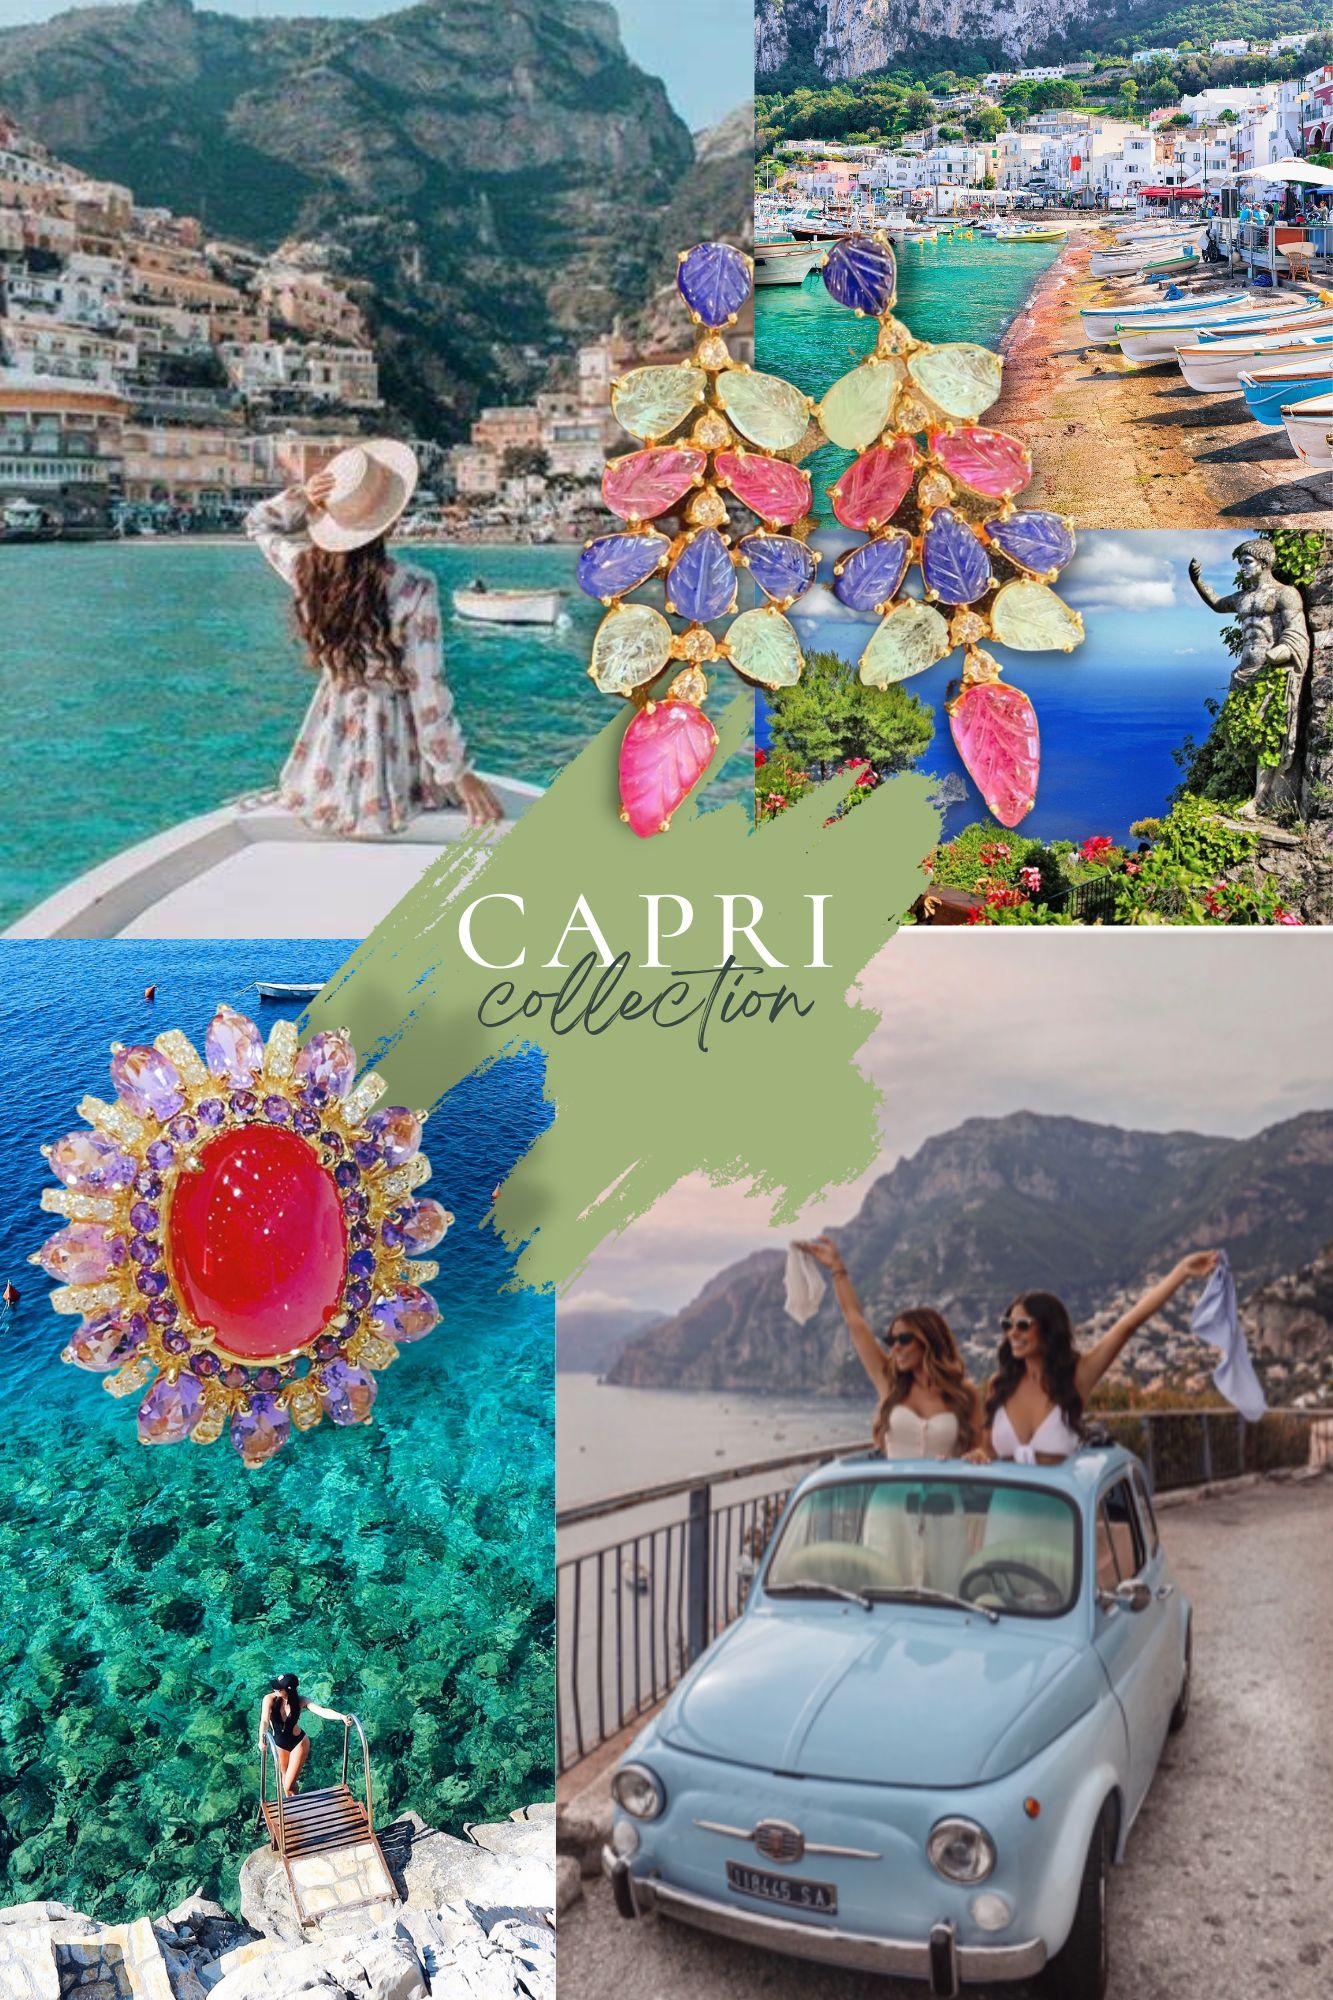 Bochic “Capri” Red Ruby & Purple Amethyst Earrings Set in 22k Gold & Silver  For Sale 3